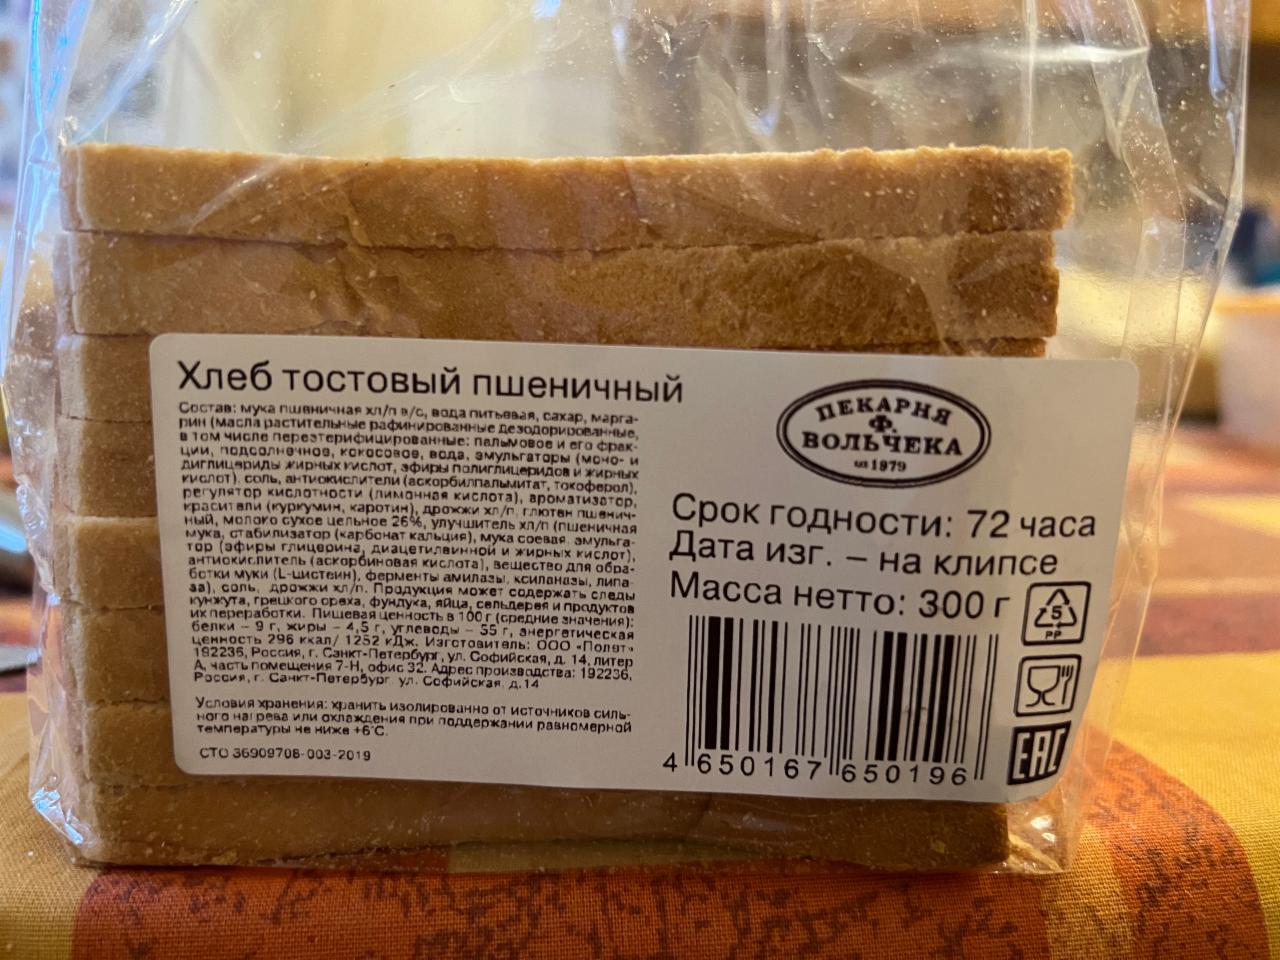 Фото - Хлеб тостовый пшеничный Вольскую Пекарня Ф. Вольчека